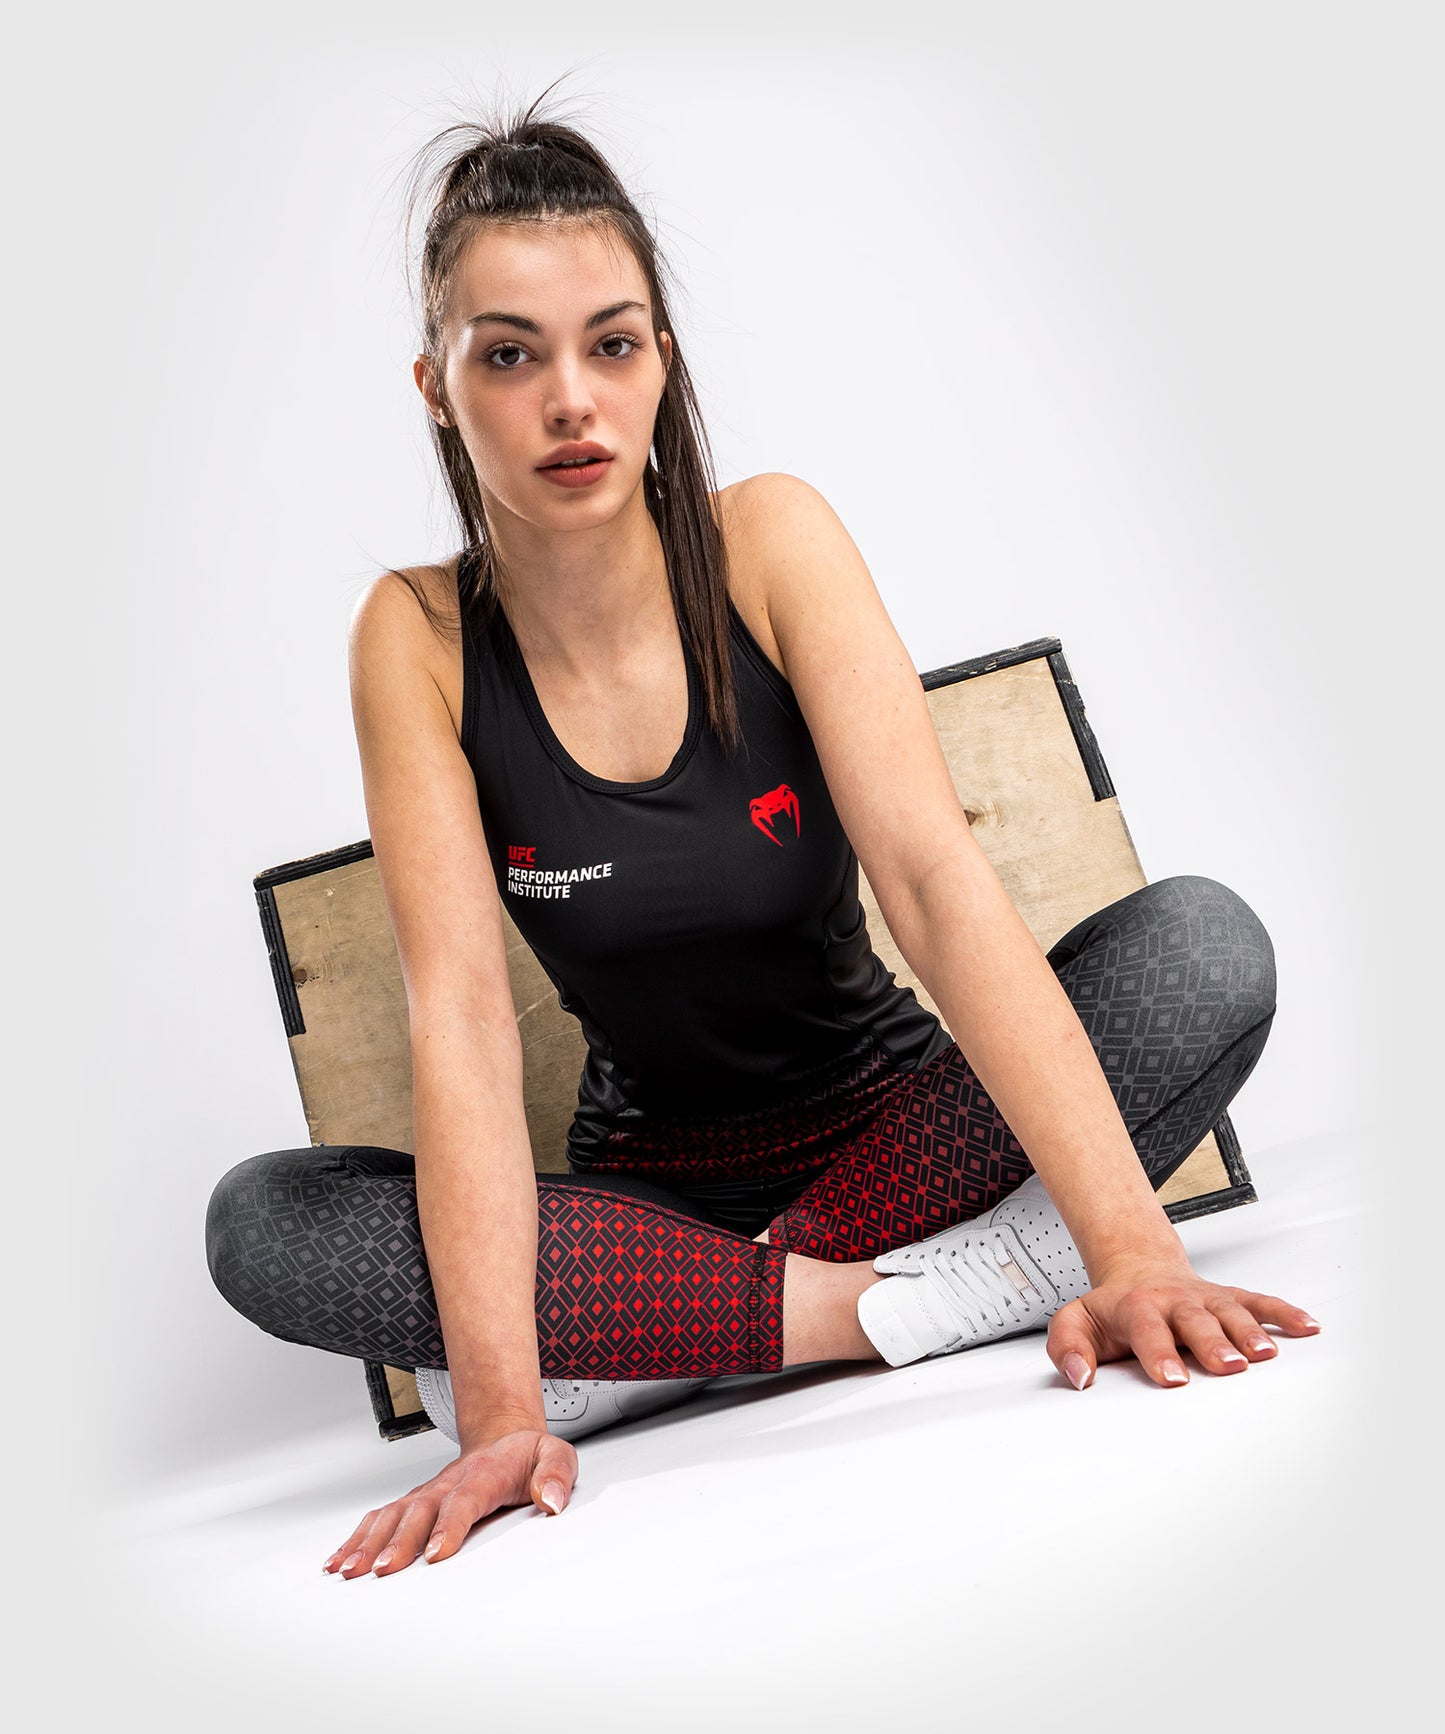 Débardeur Dry Tech UFC Venum Performance Institute - Pour Femmes - Noir/Rouge